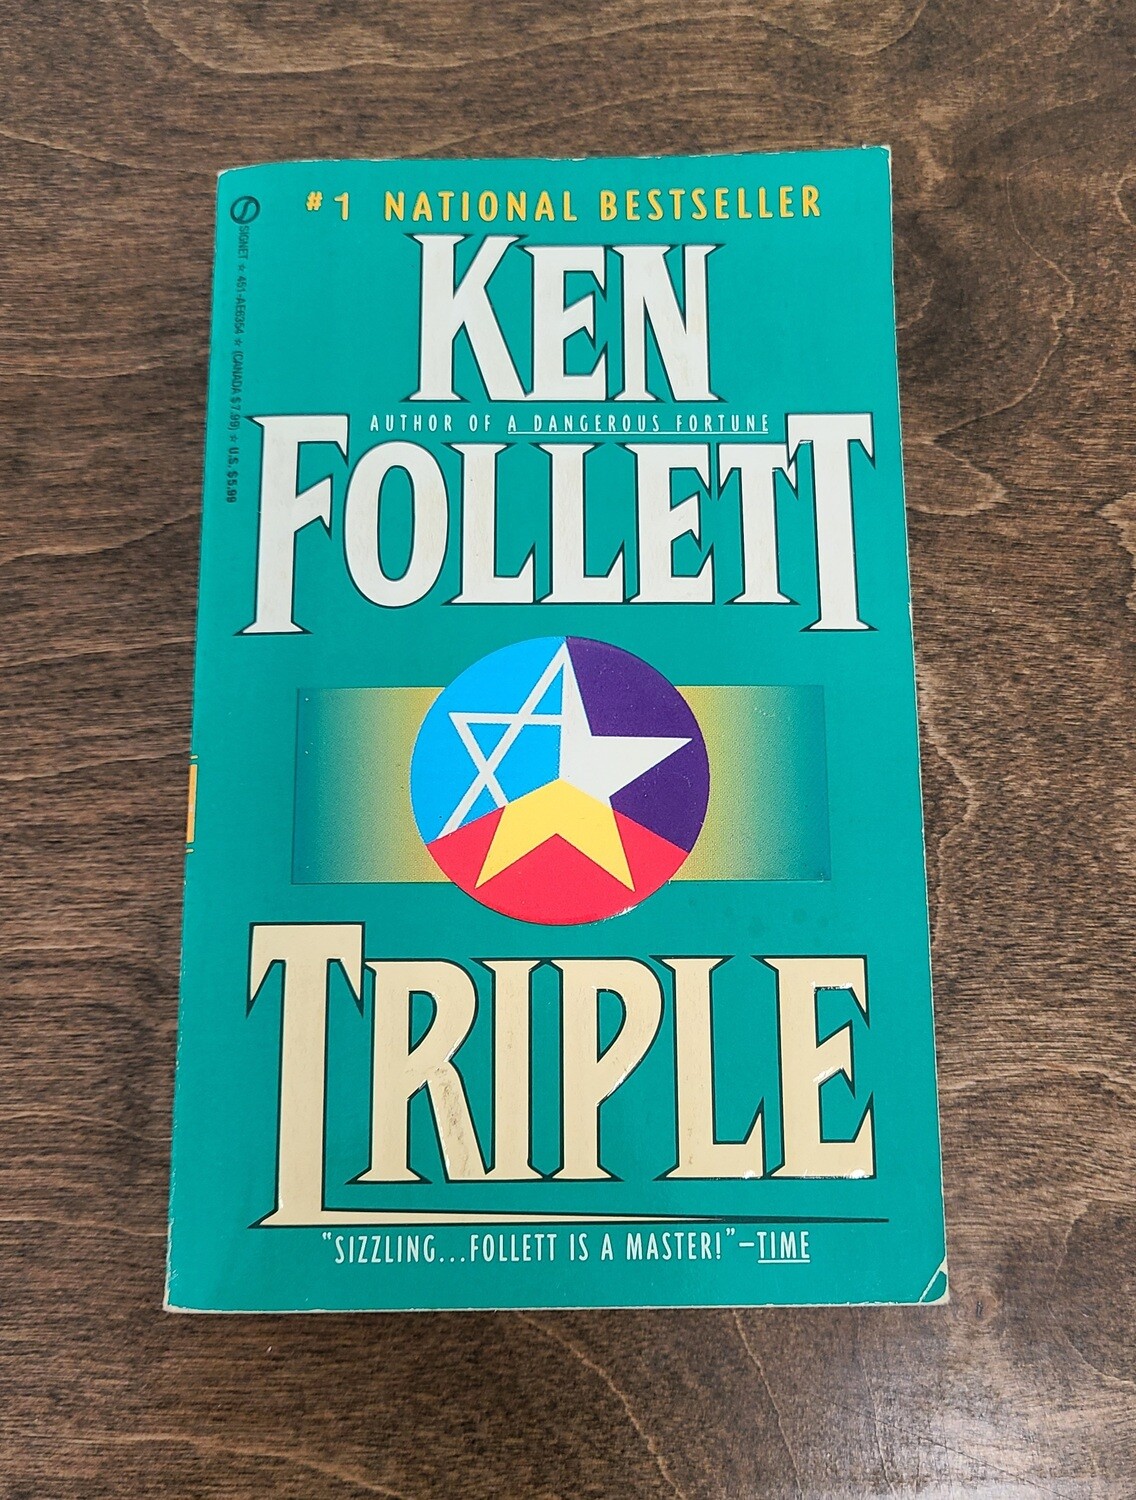 Triple by Ken Follett